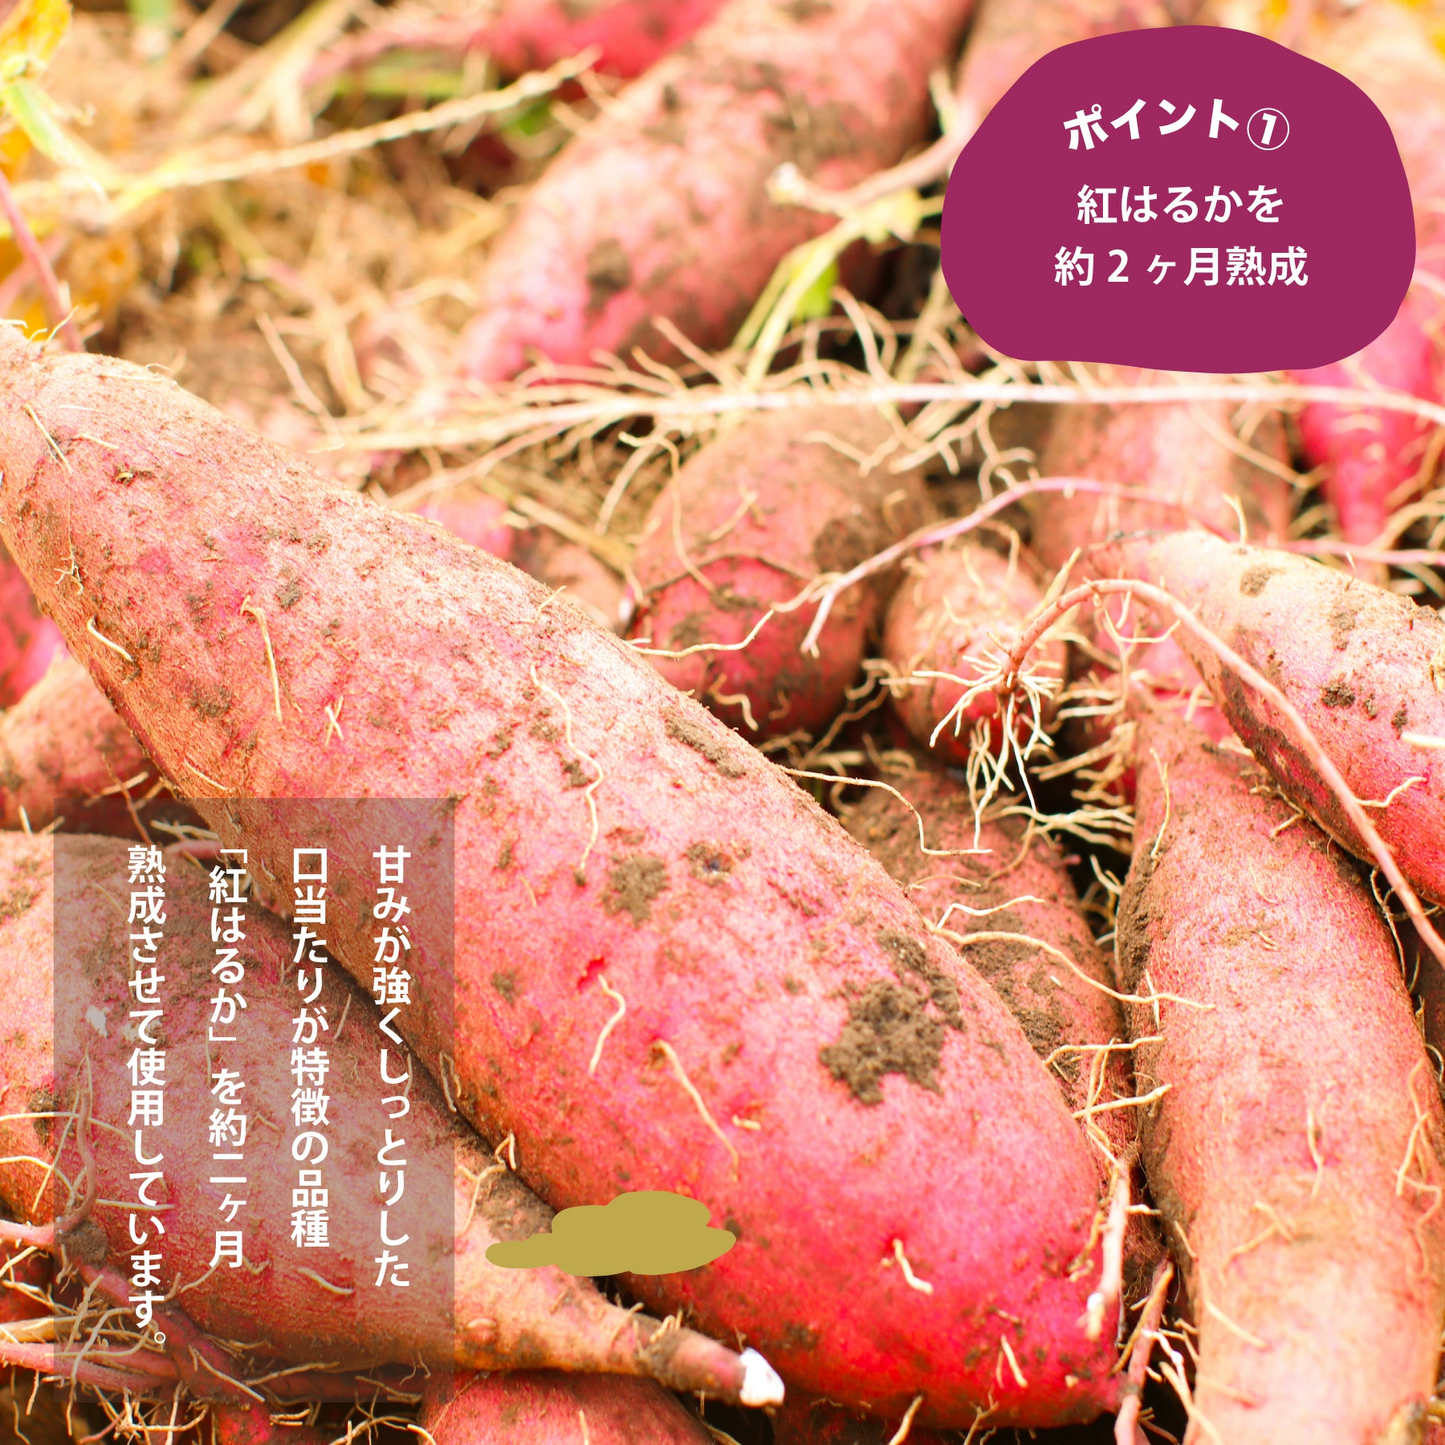 鹿児島県産熟成紅はるか使用 紅はるか丸干し 干し芋 220g